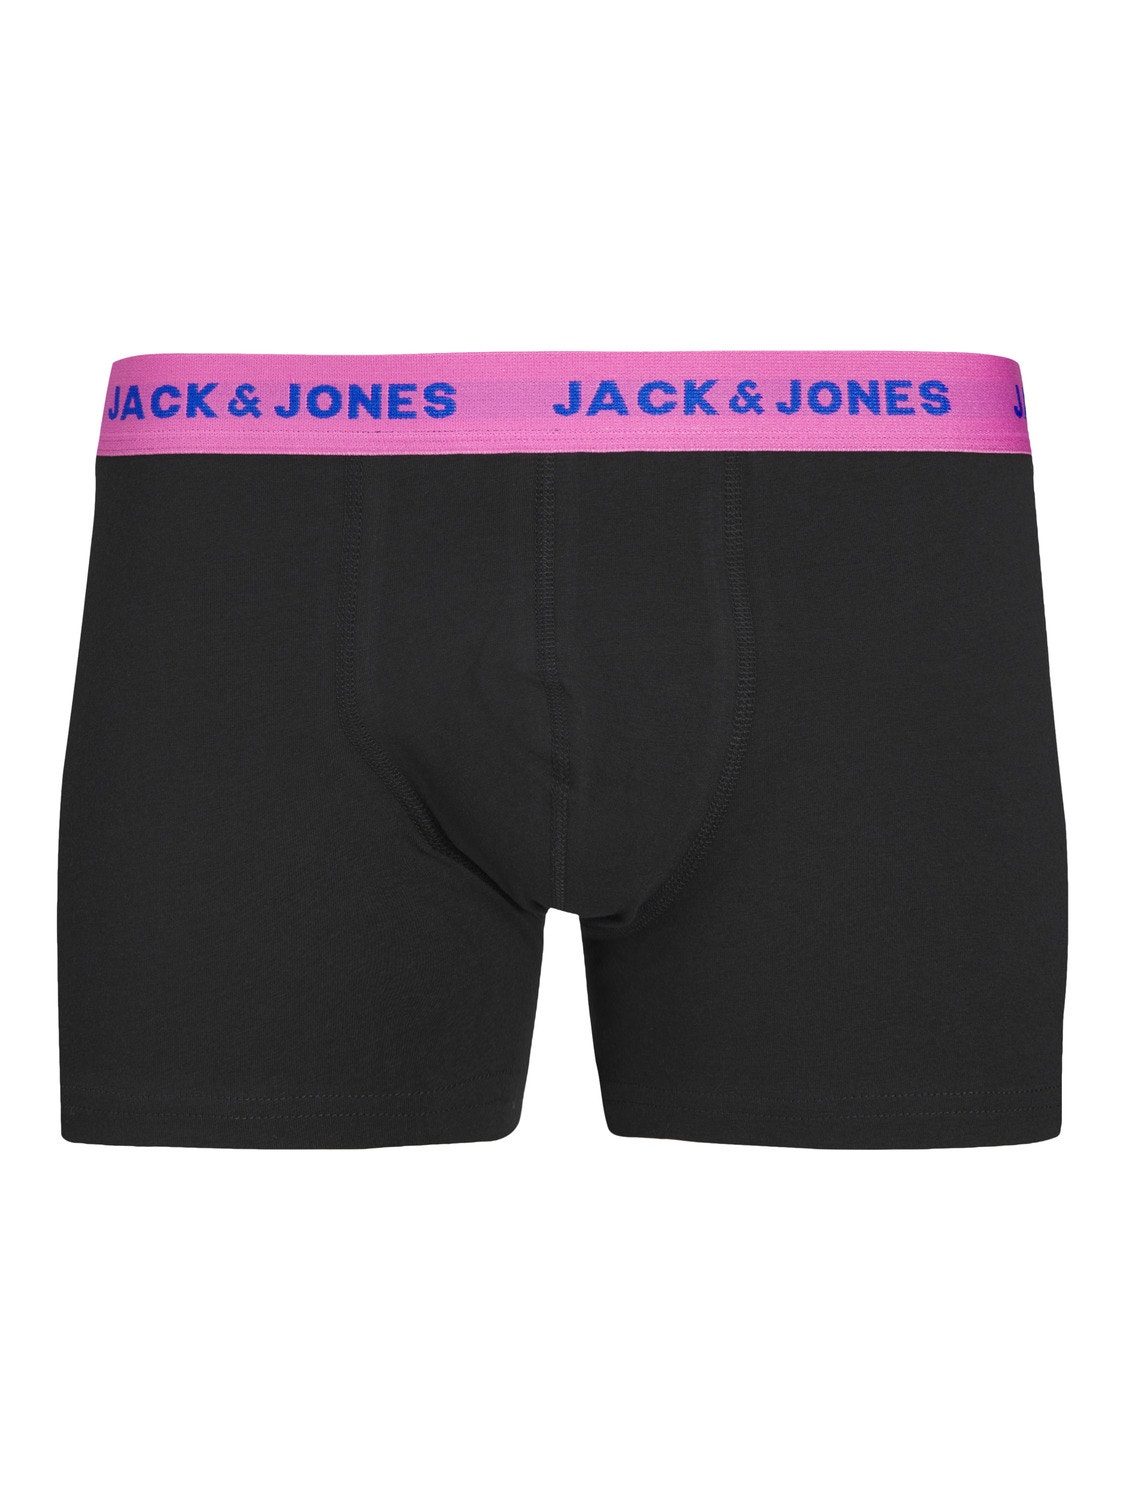 Jack & Jones 5-pakuotės Trumpikės -Black - 12250613